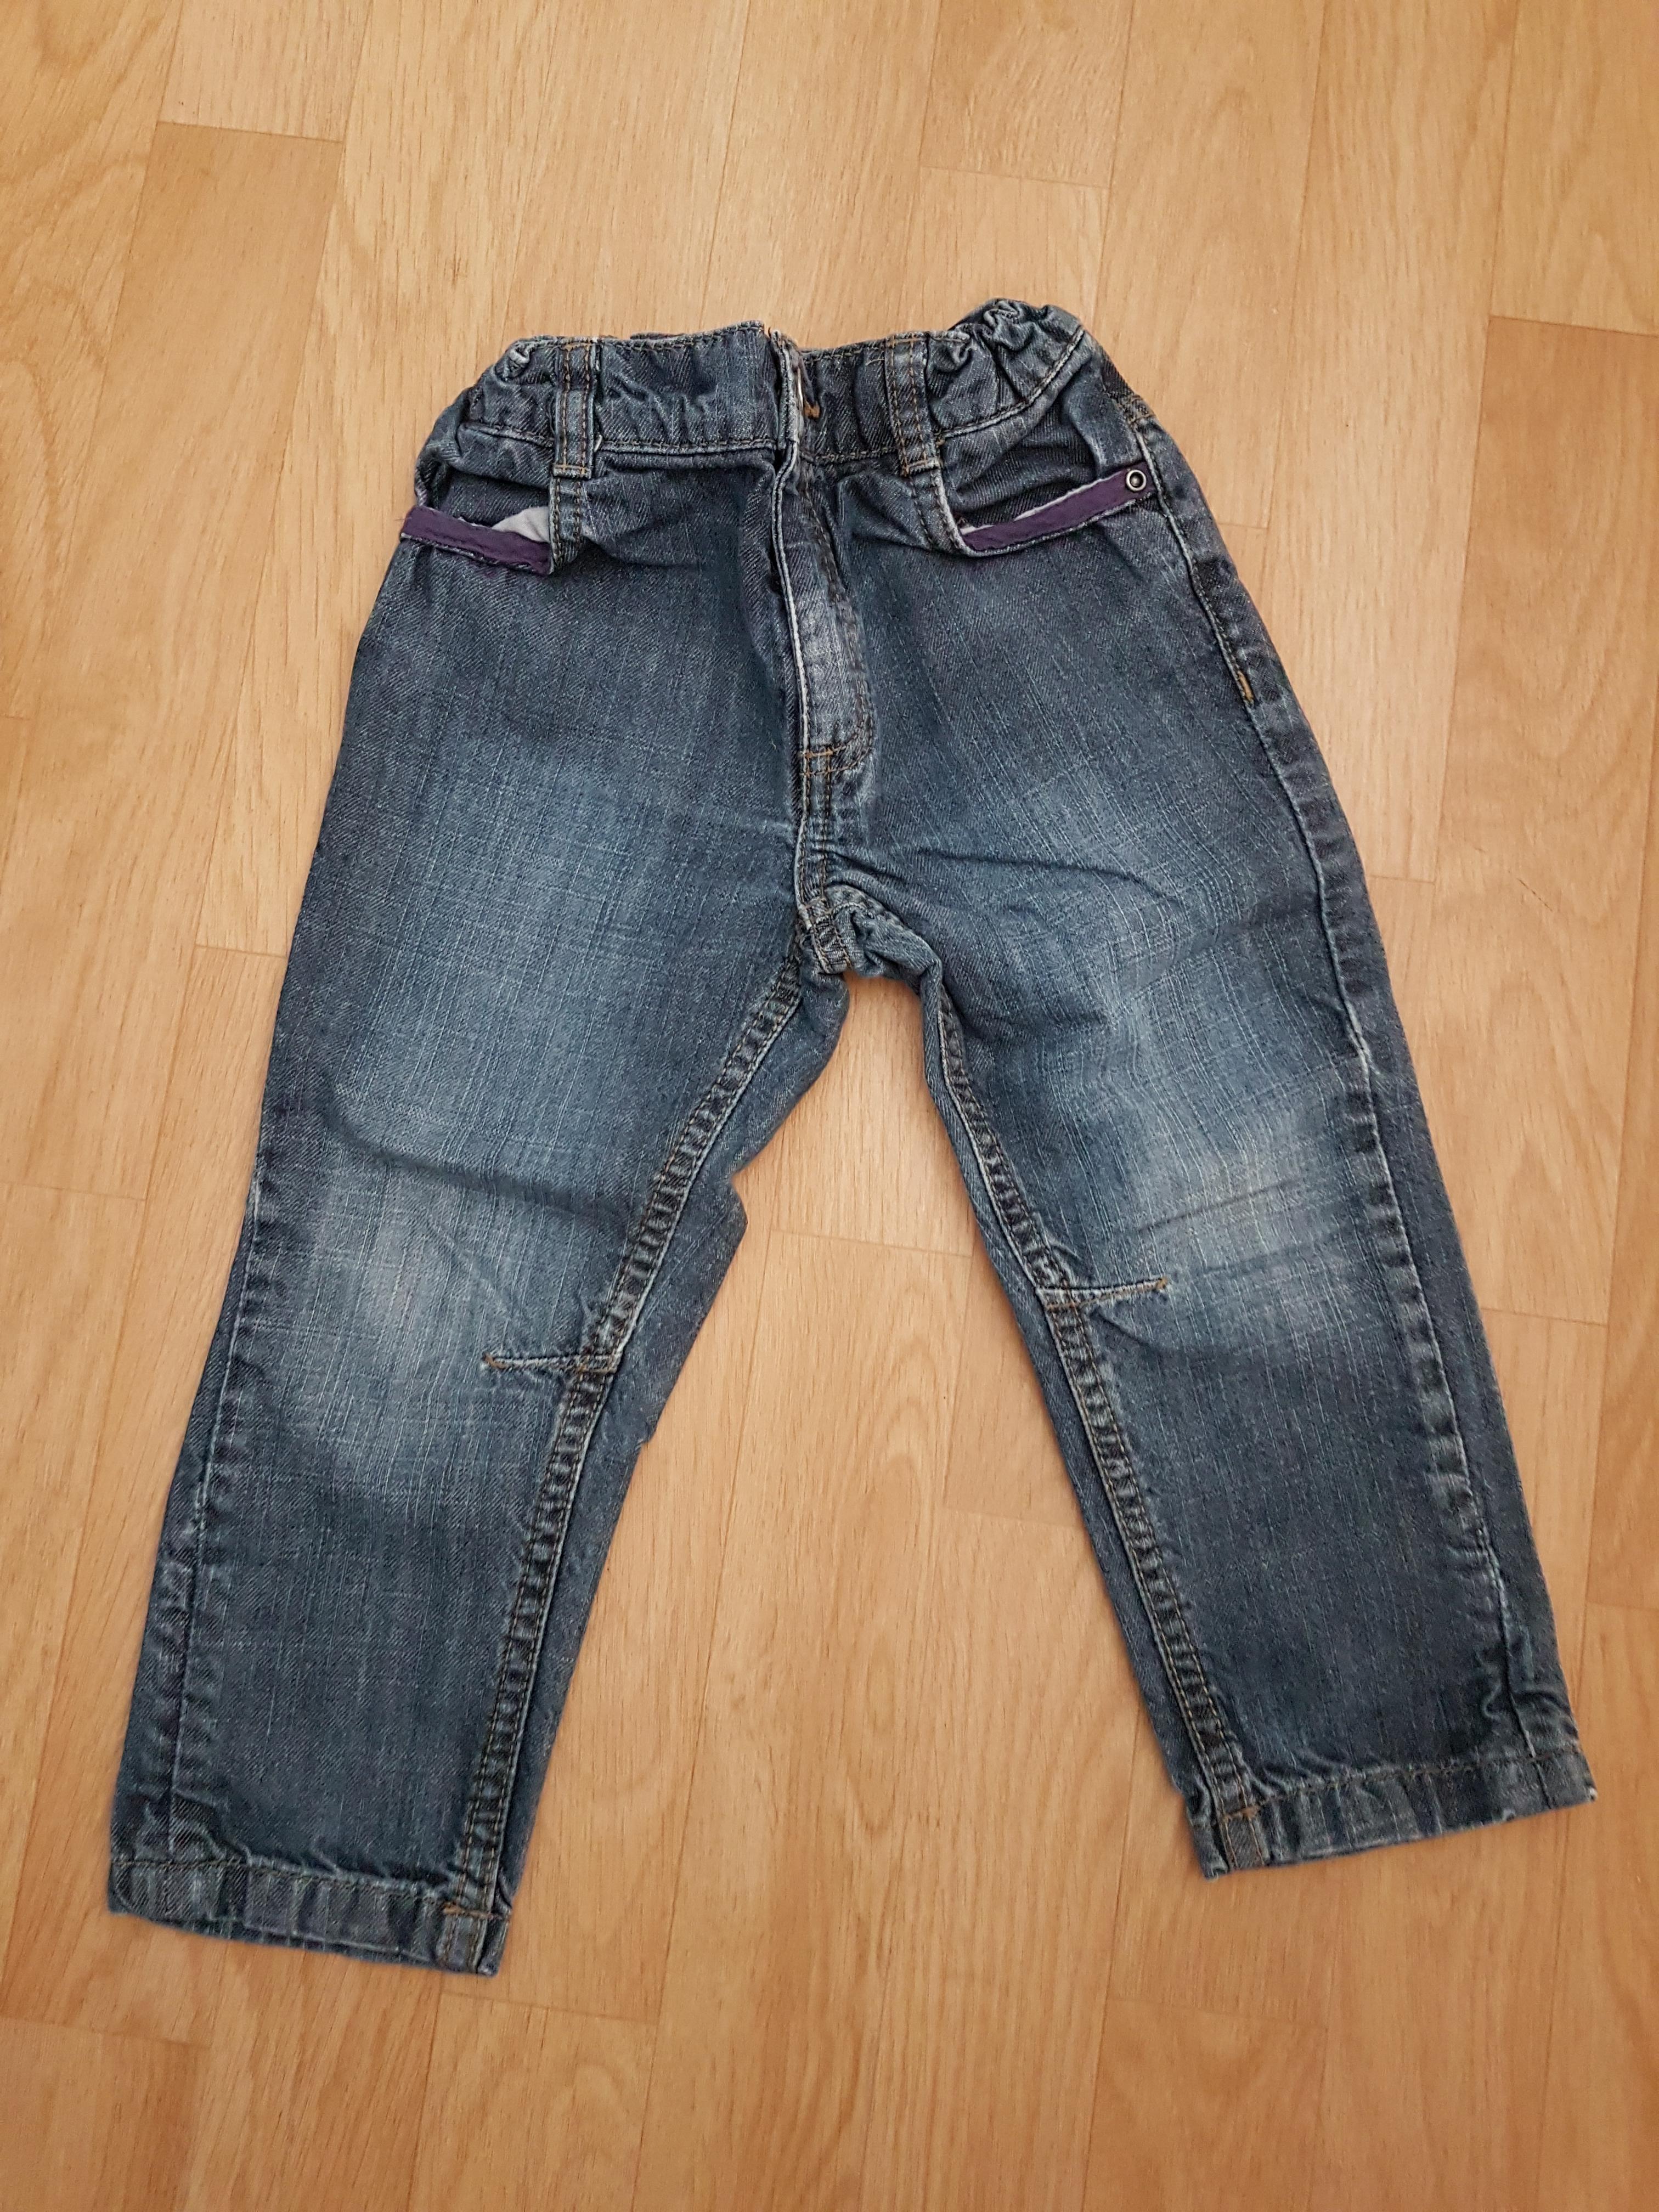 troc de troc réservé e - pantalon 3 ans jeans image 0